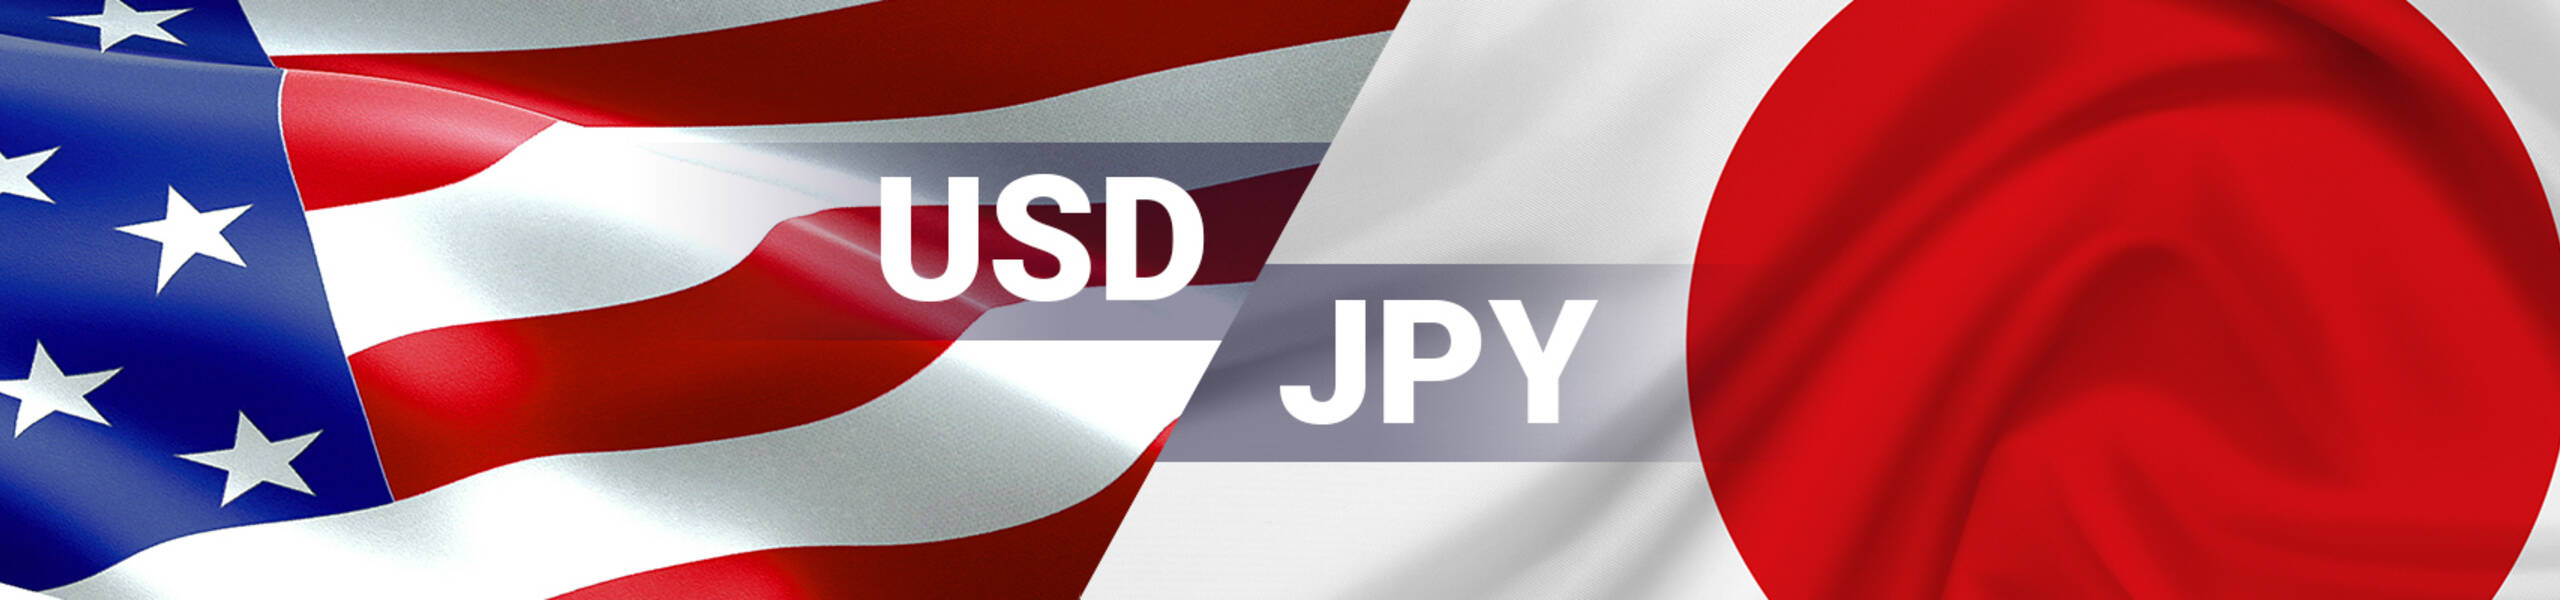 USD/JPY  buscando nuevos mínimos en 110.00